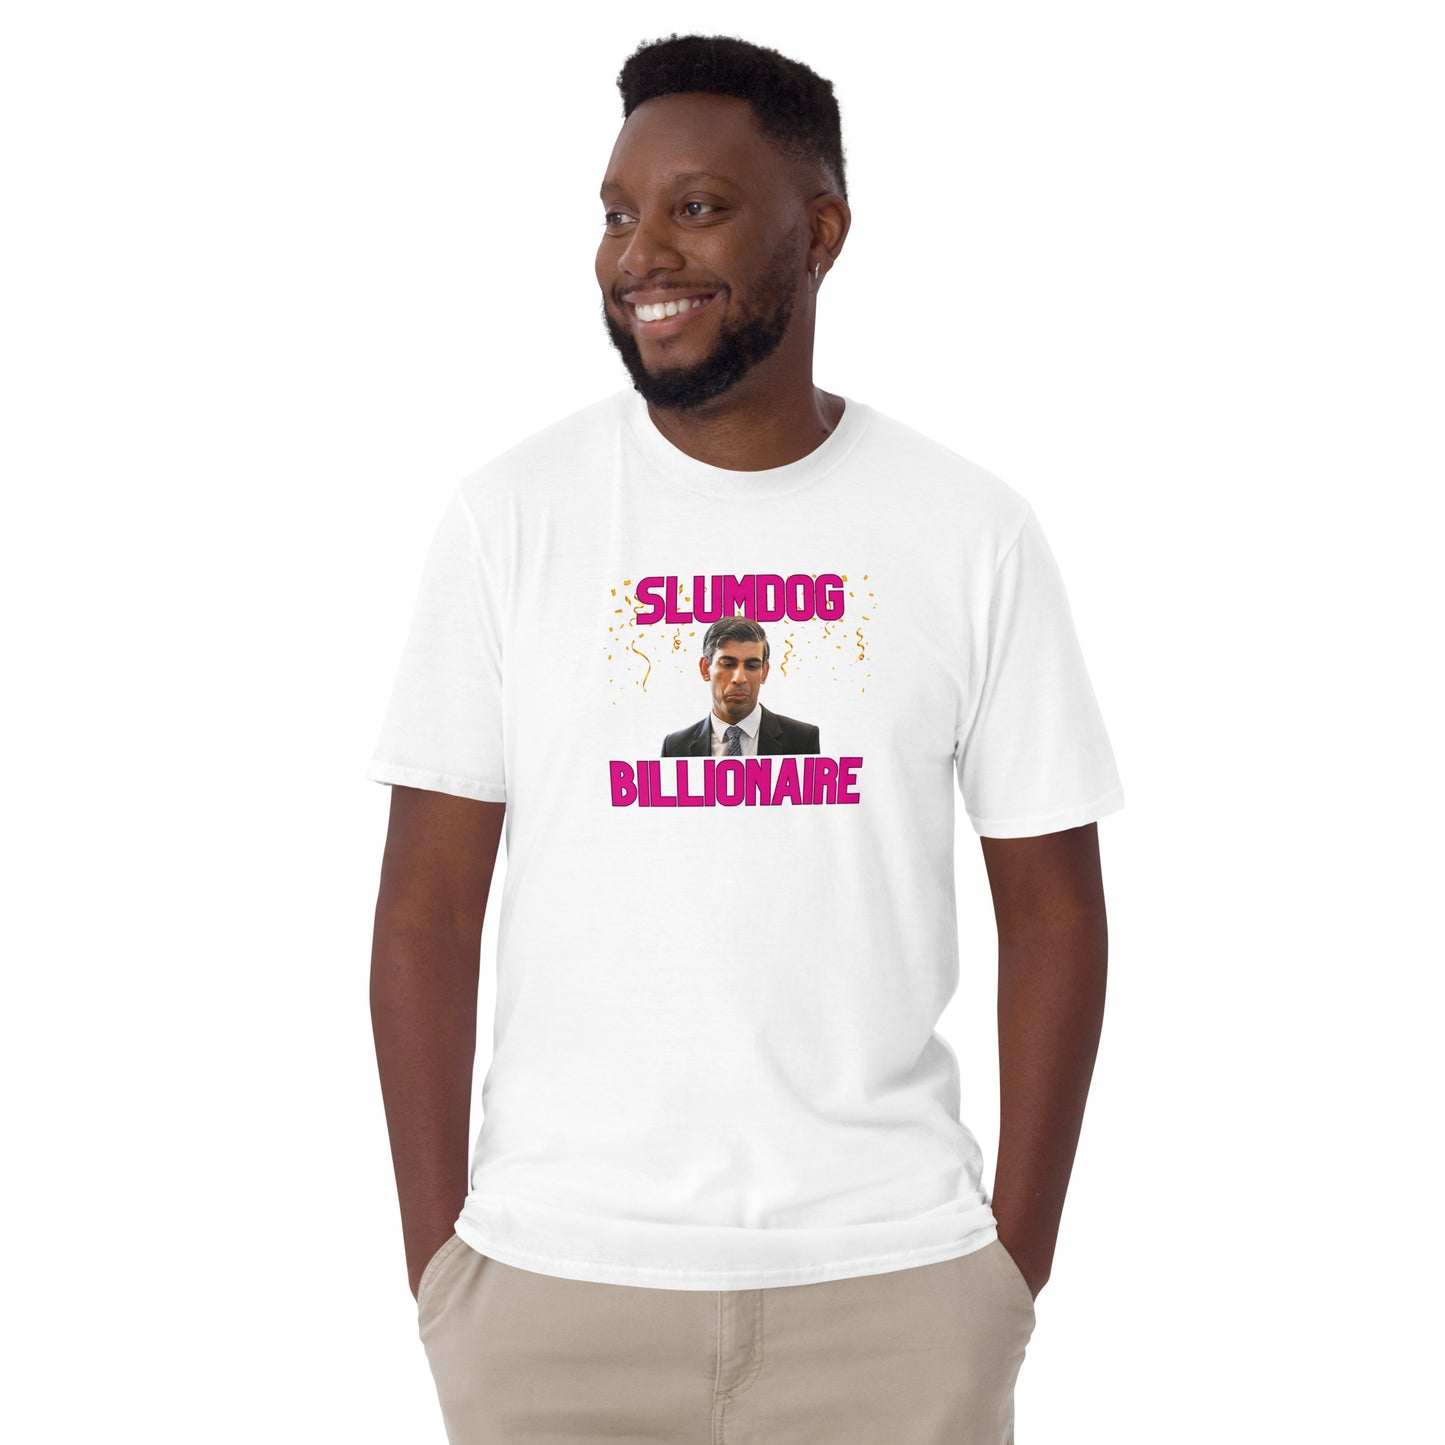 Rishi Sunak. Slumdog Billionaire T-Shirt